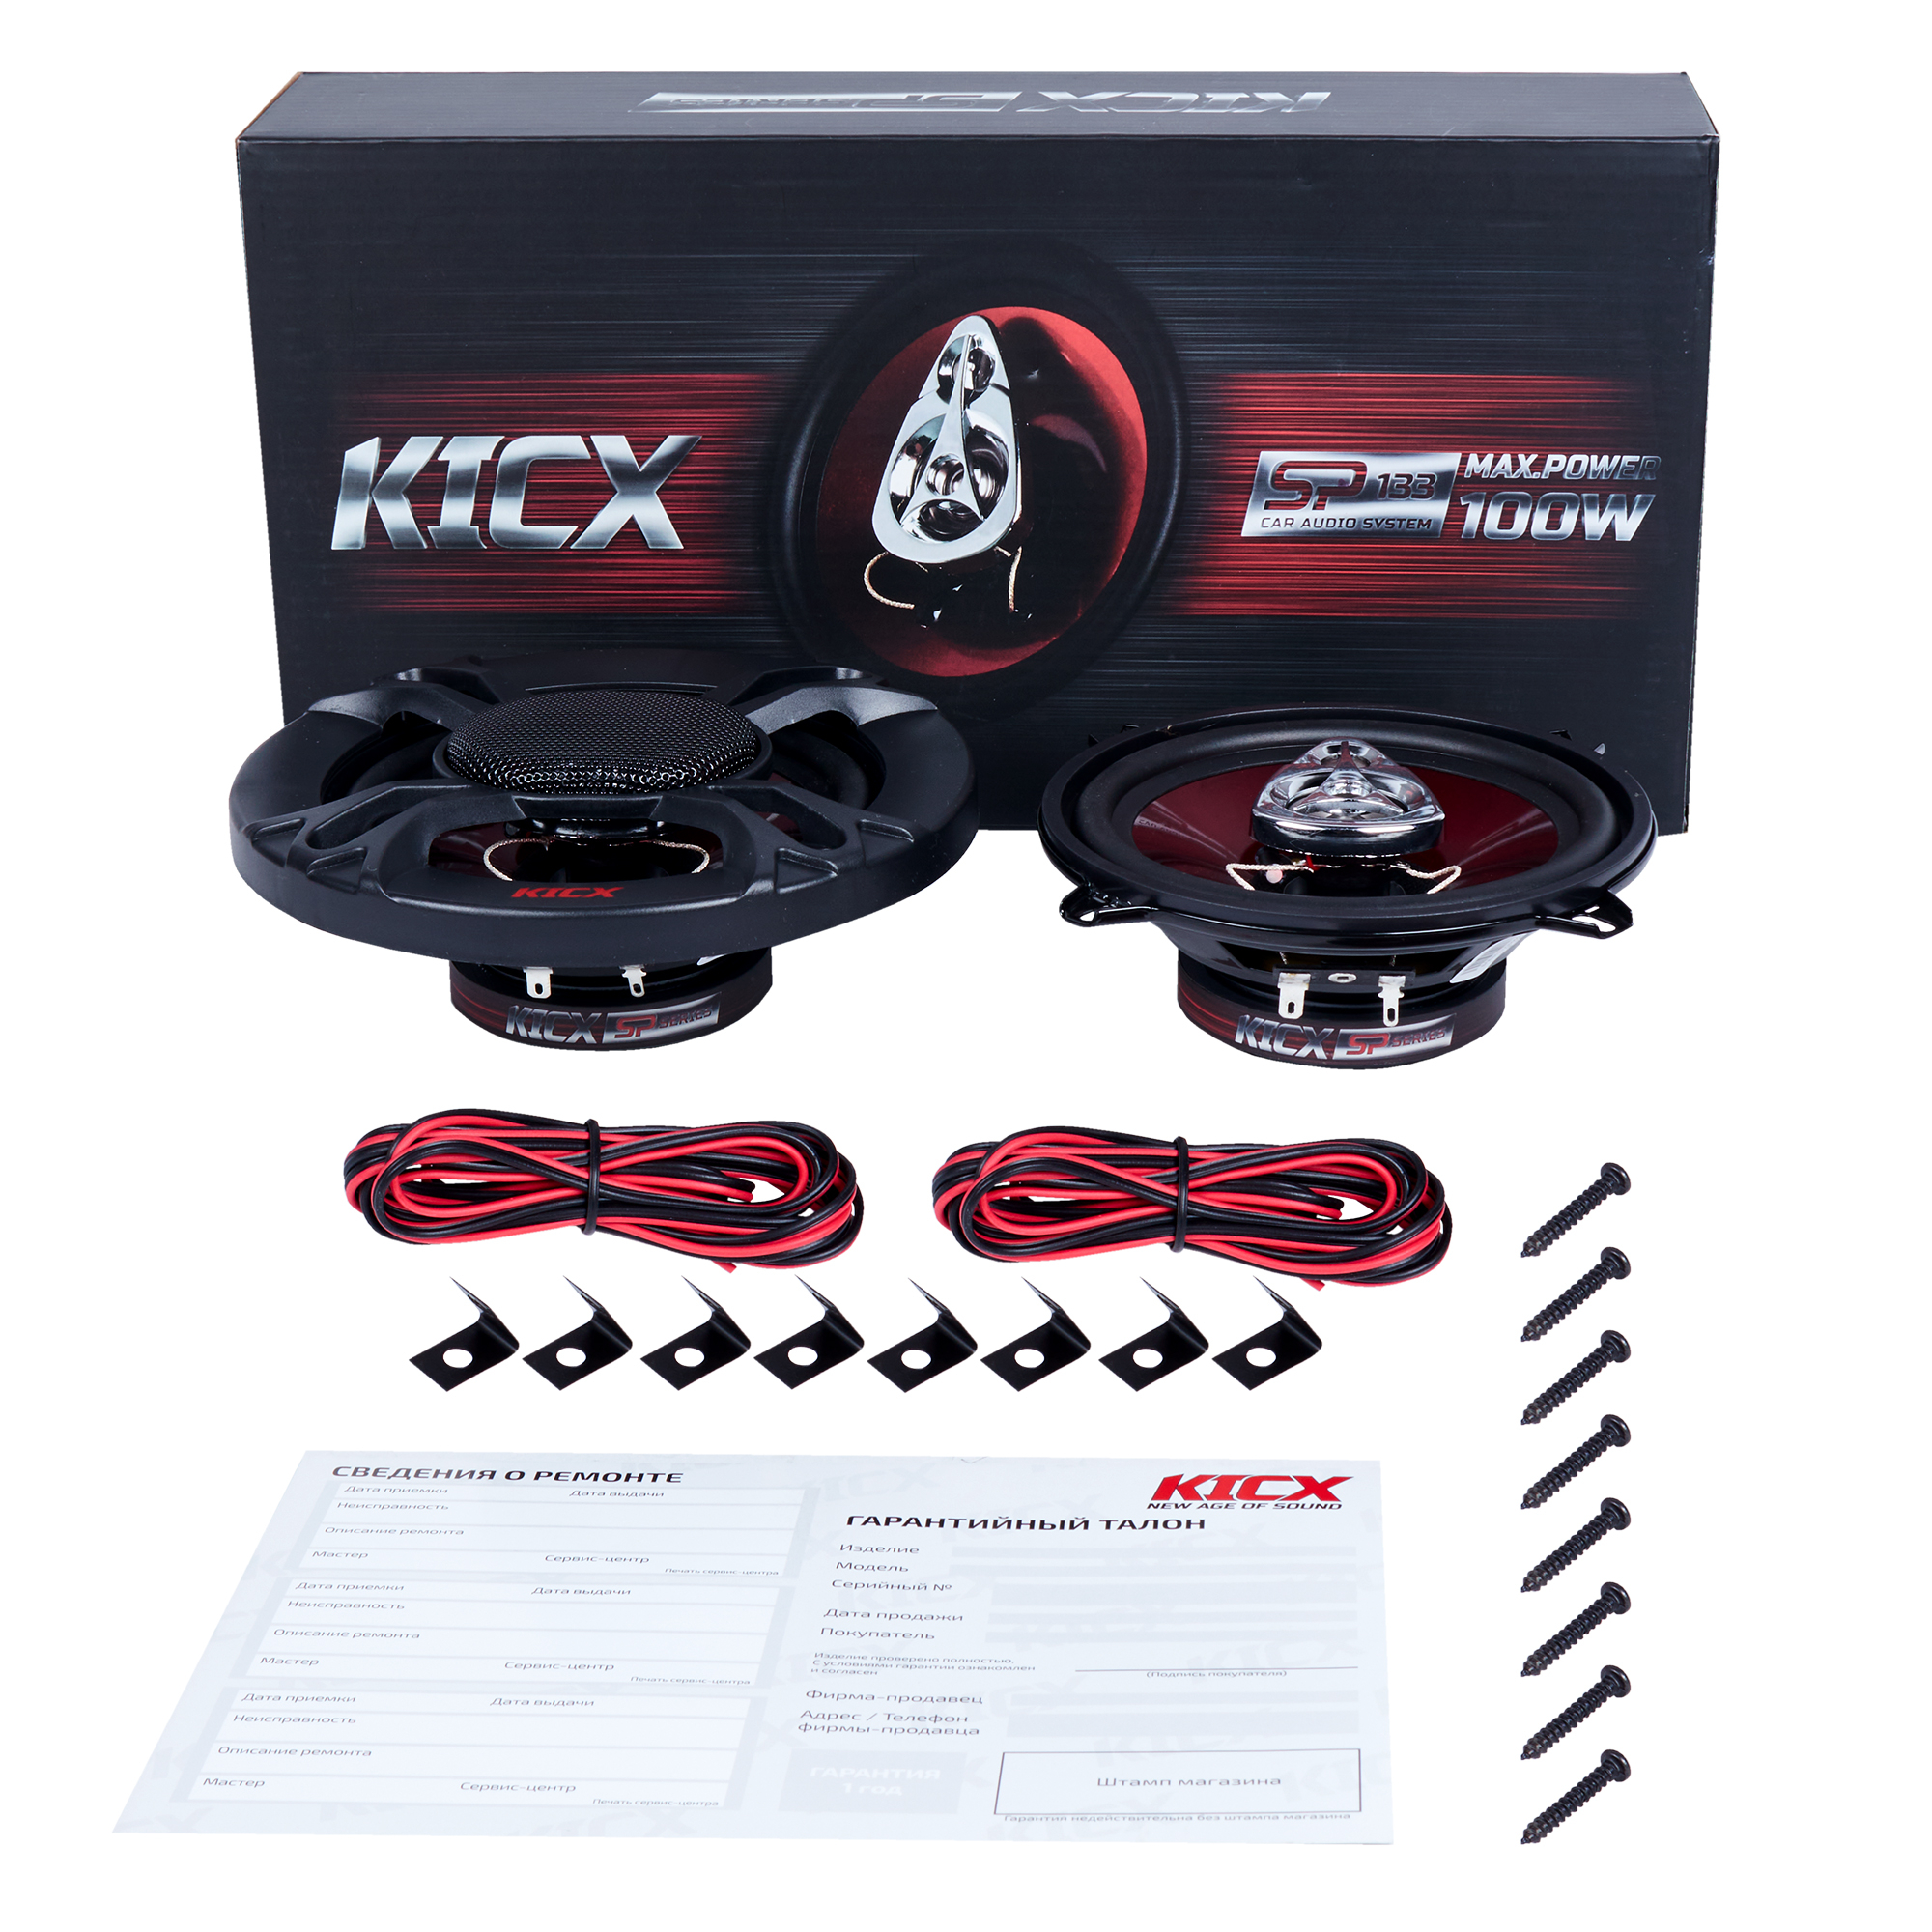 Kicx Kicx SP 133